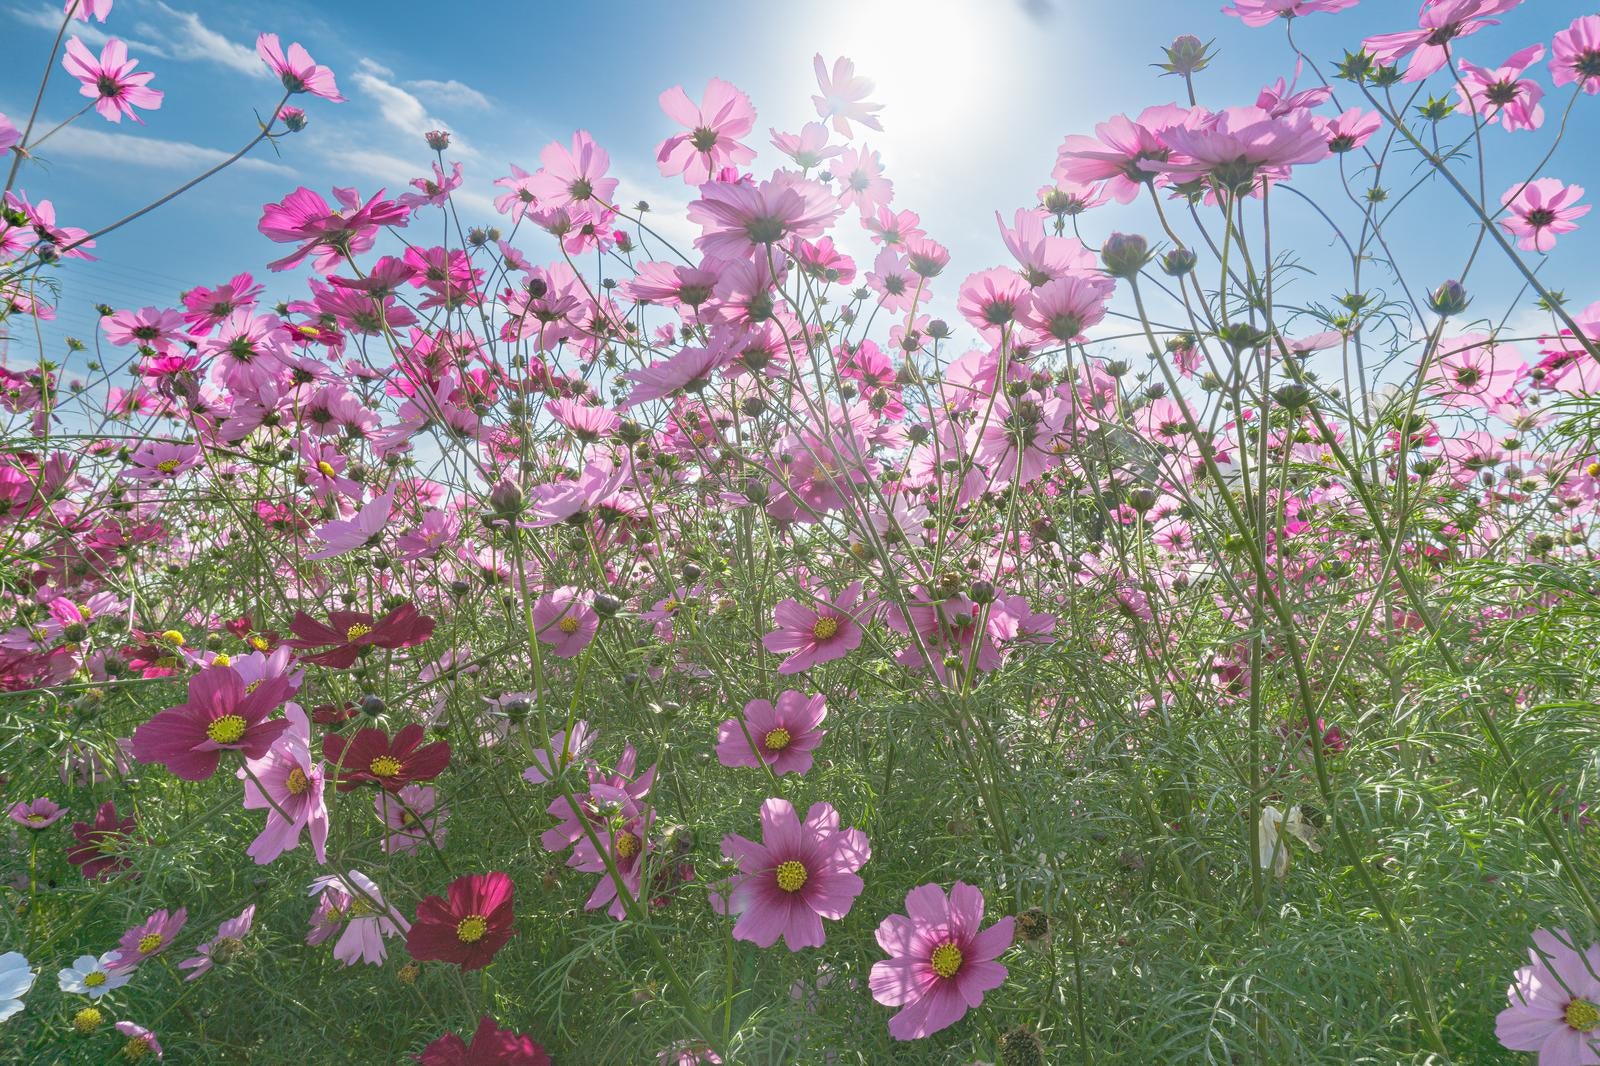 「光に包まれて咲くコスモス」の写真